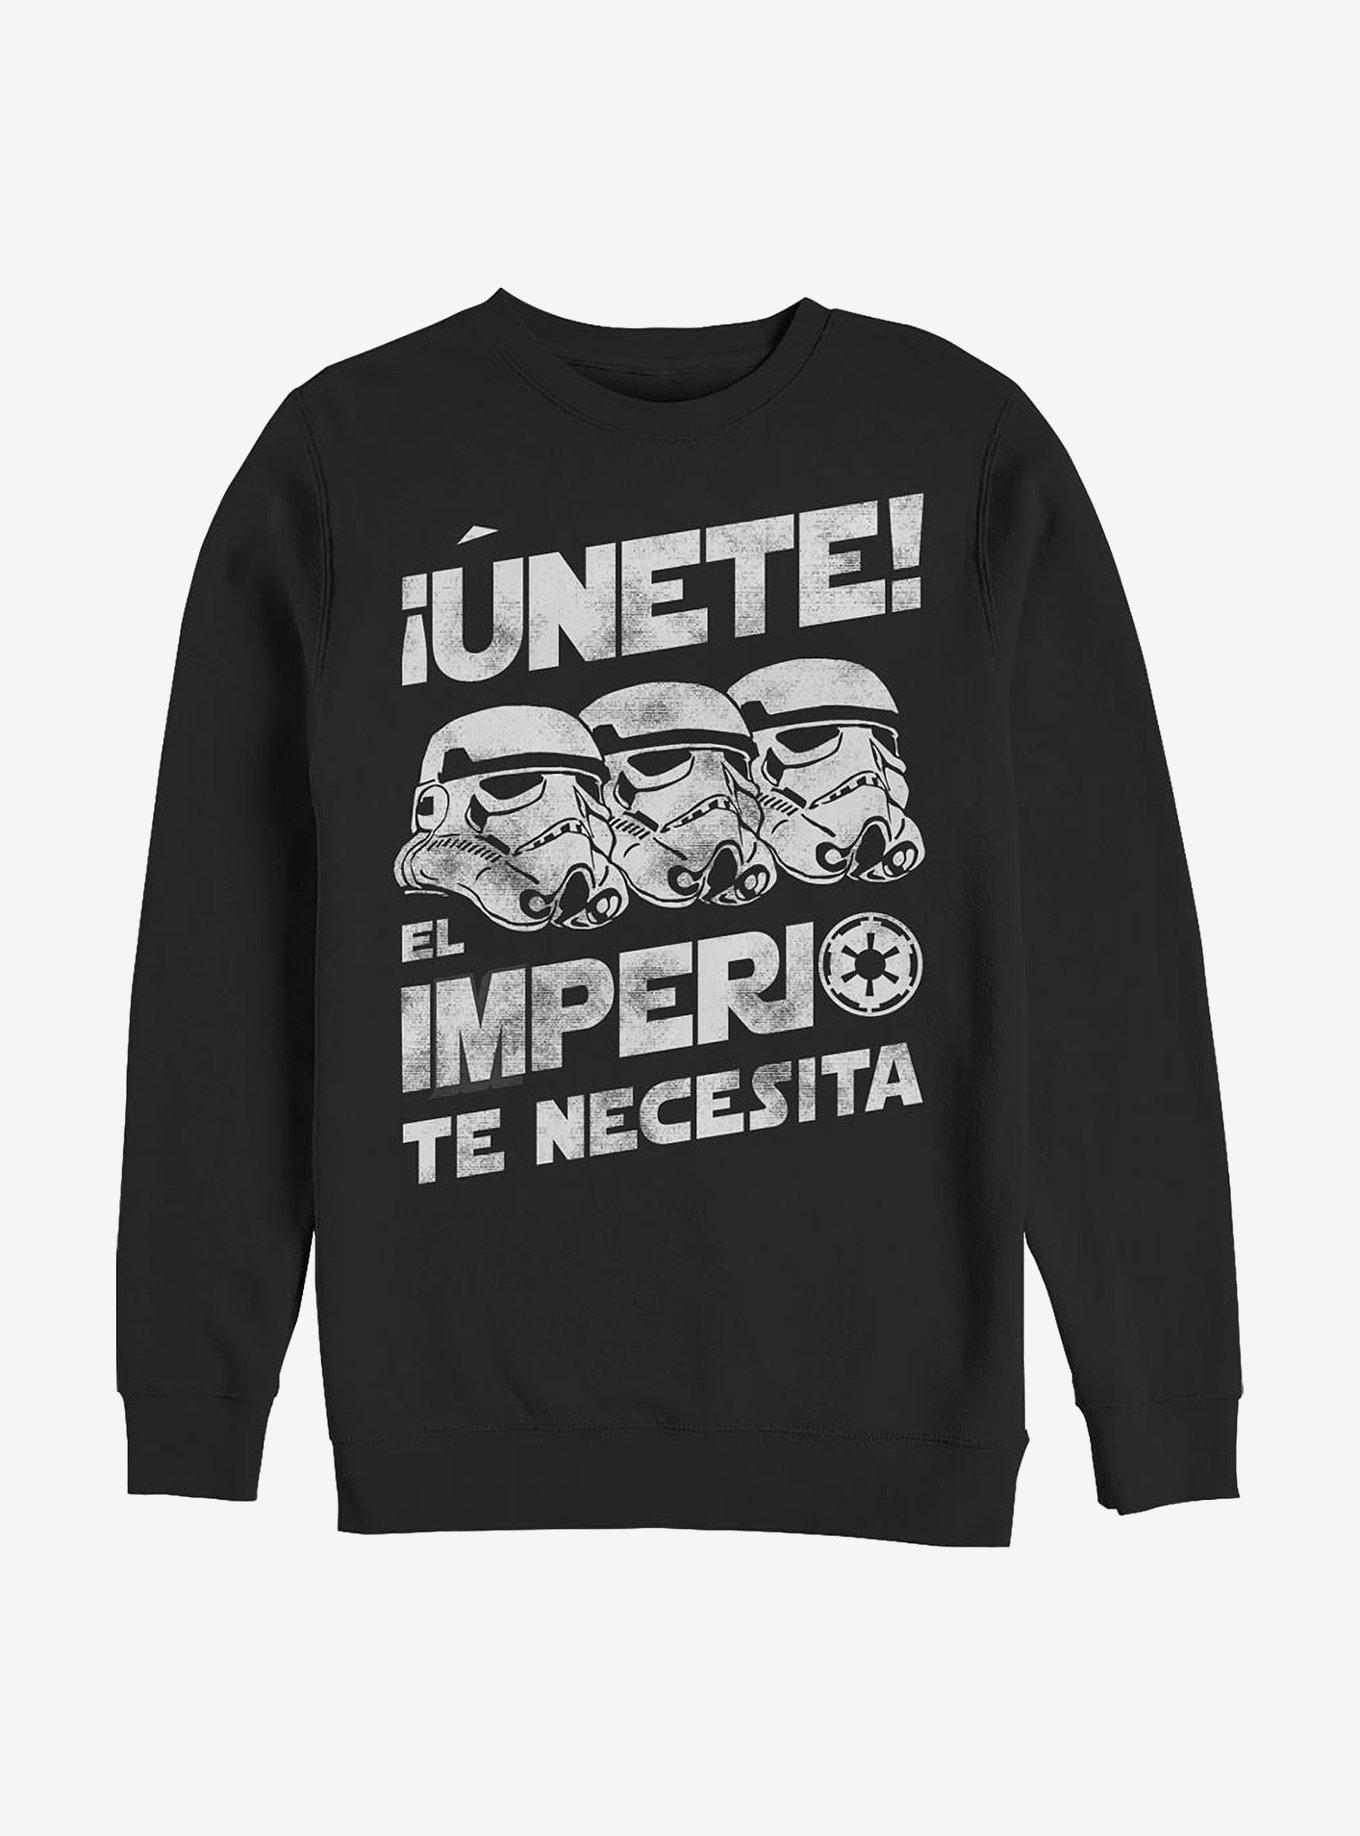 Star Wars Unete Crew Sweatshirt, , hi-res